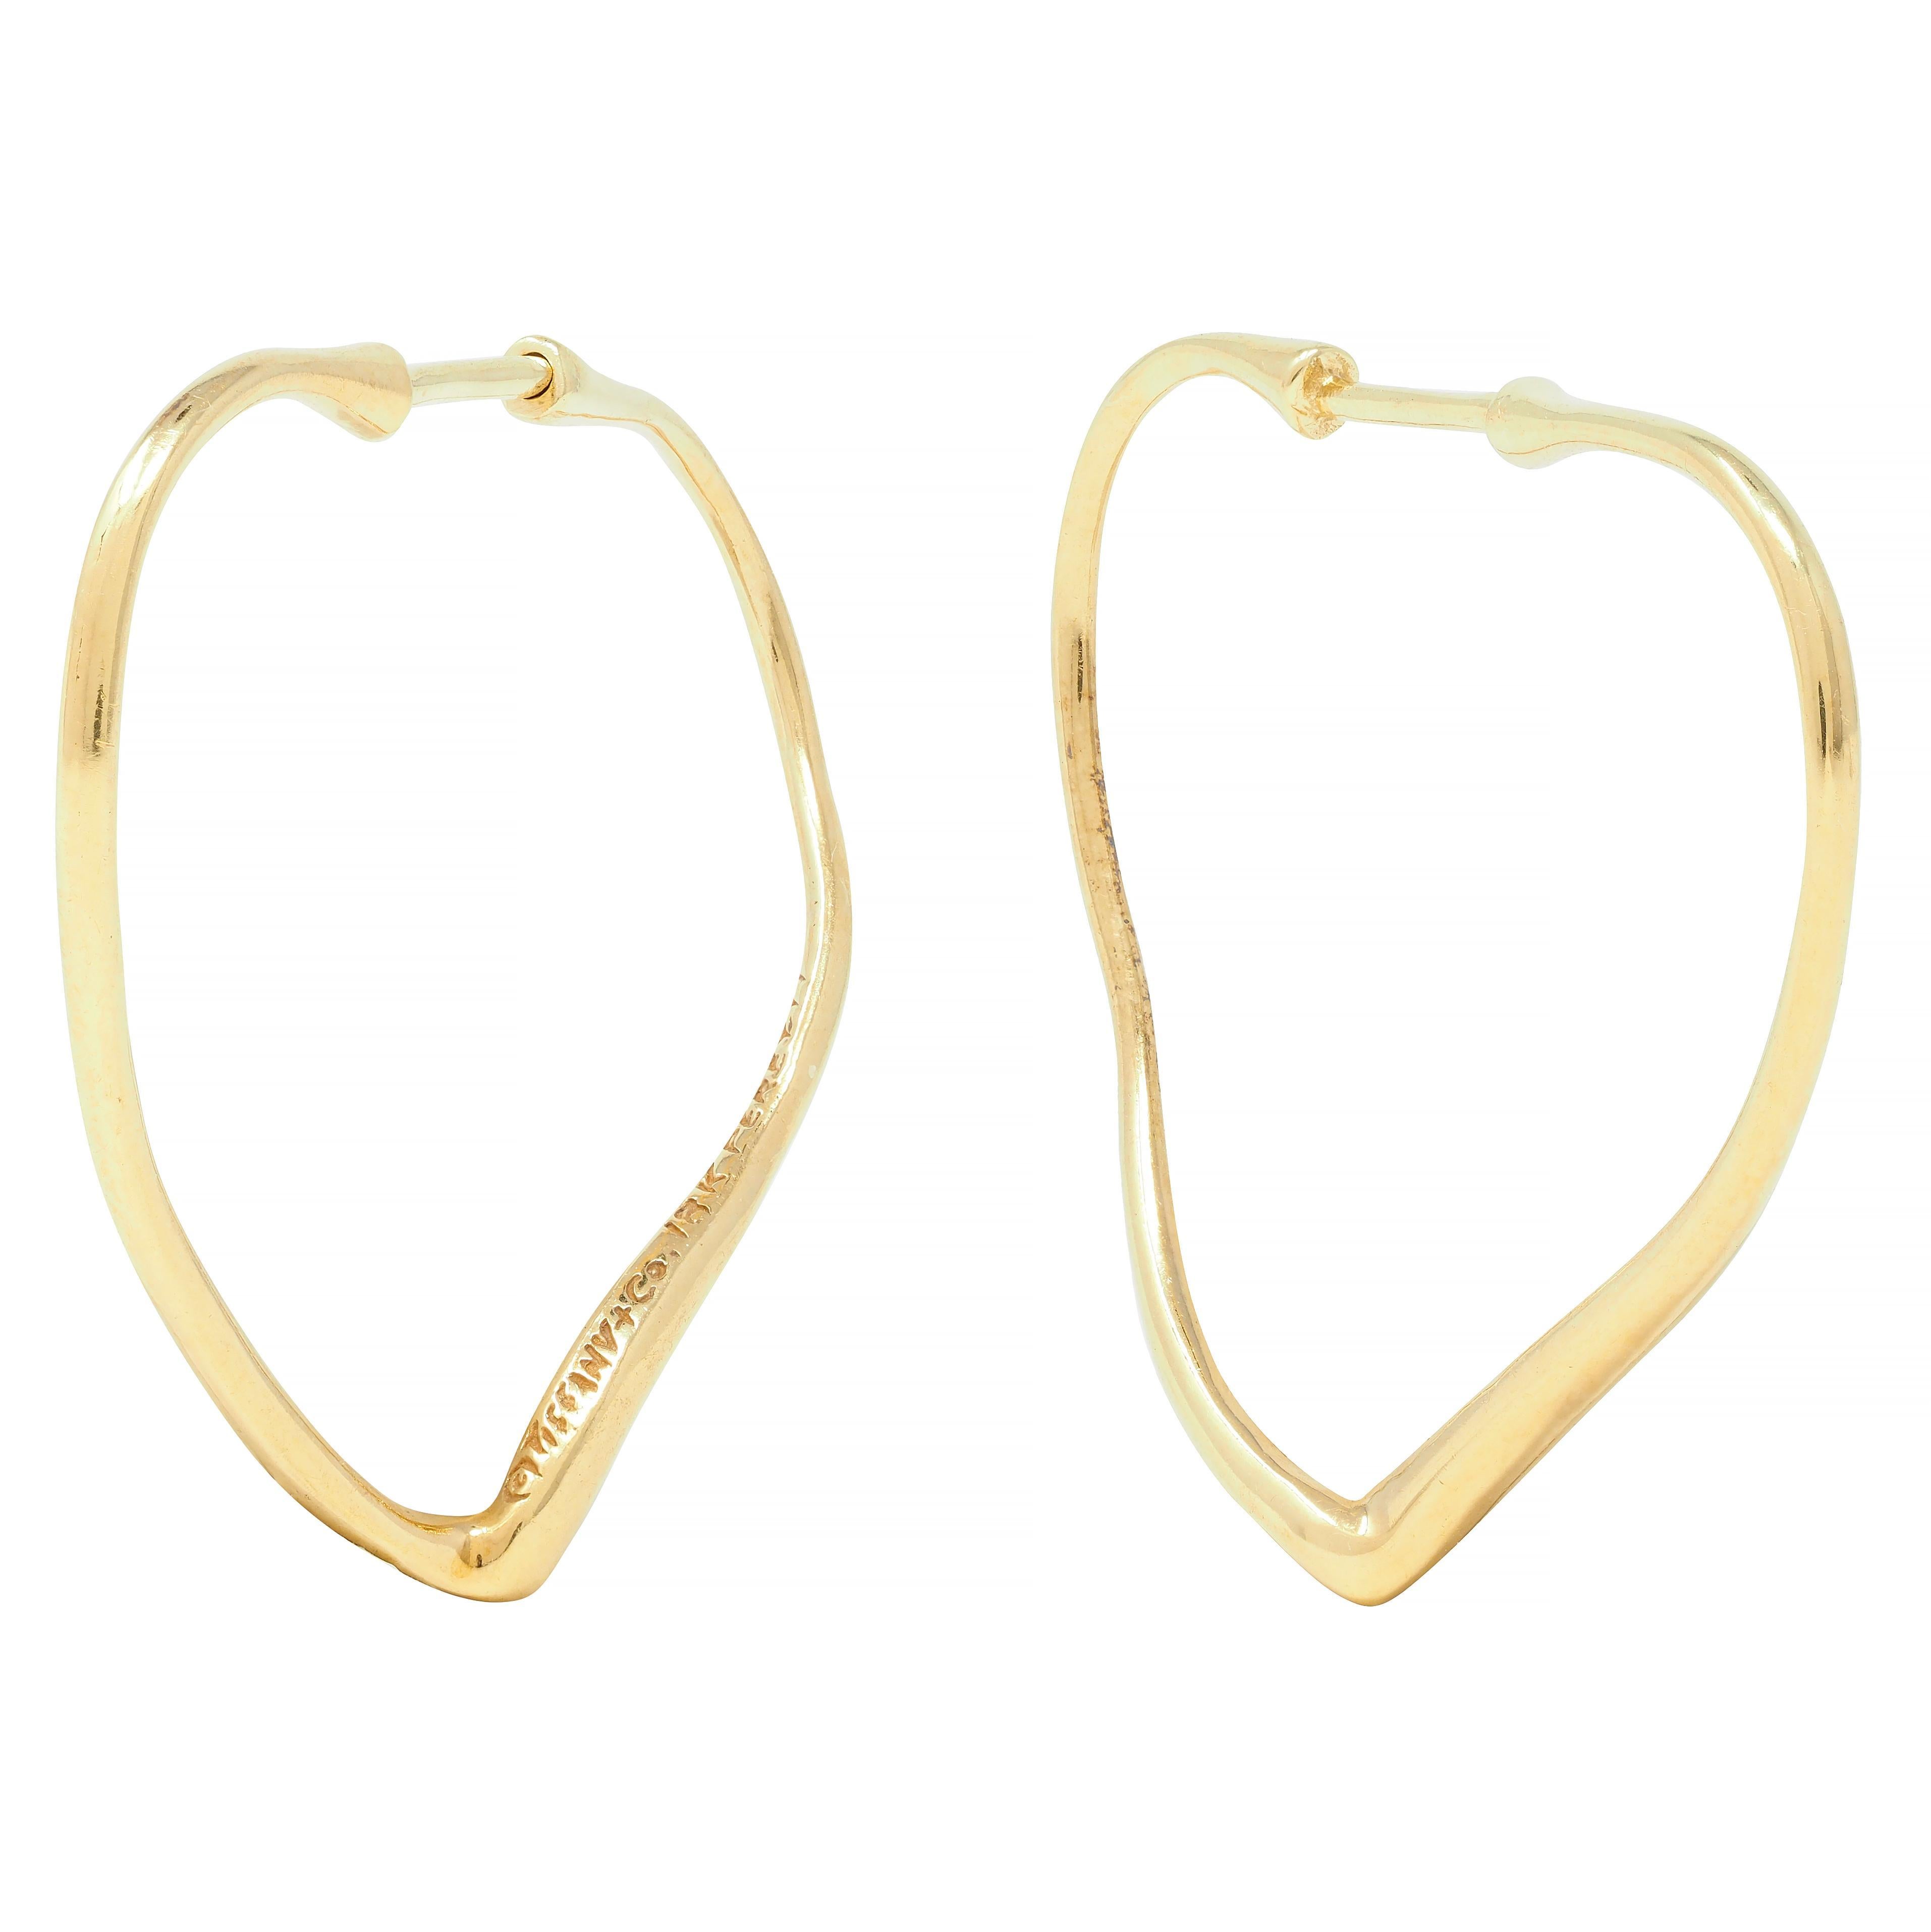 Elsa Peretti Tiffany & Co. Vintage 18 Karat Yellow Gold Open Heart Hoop Earrings 1